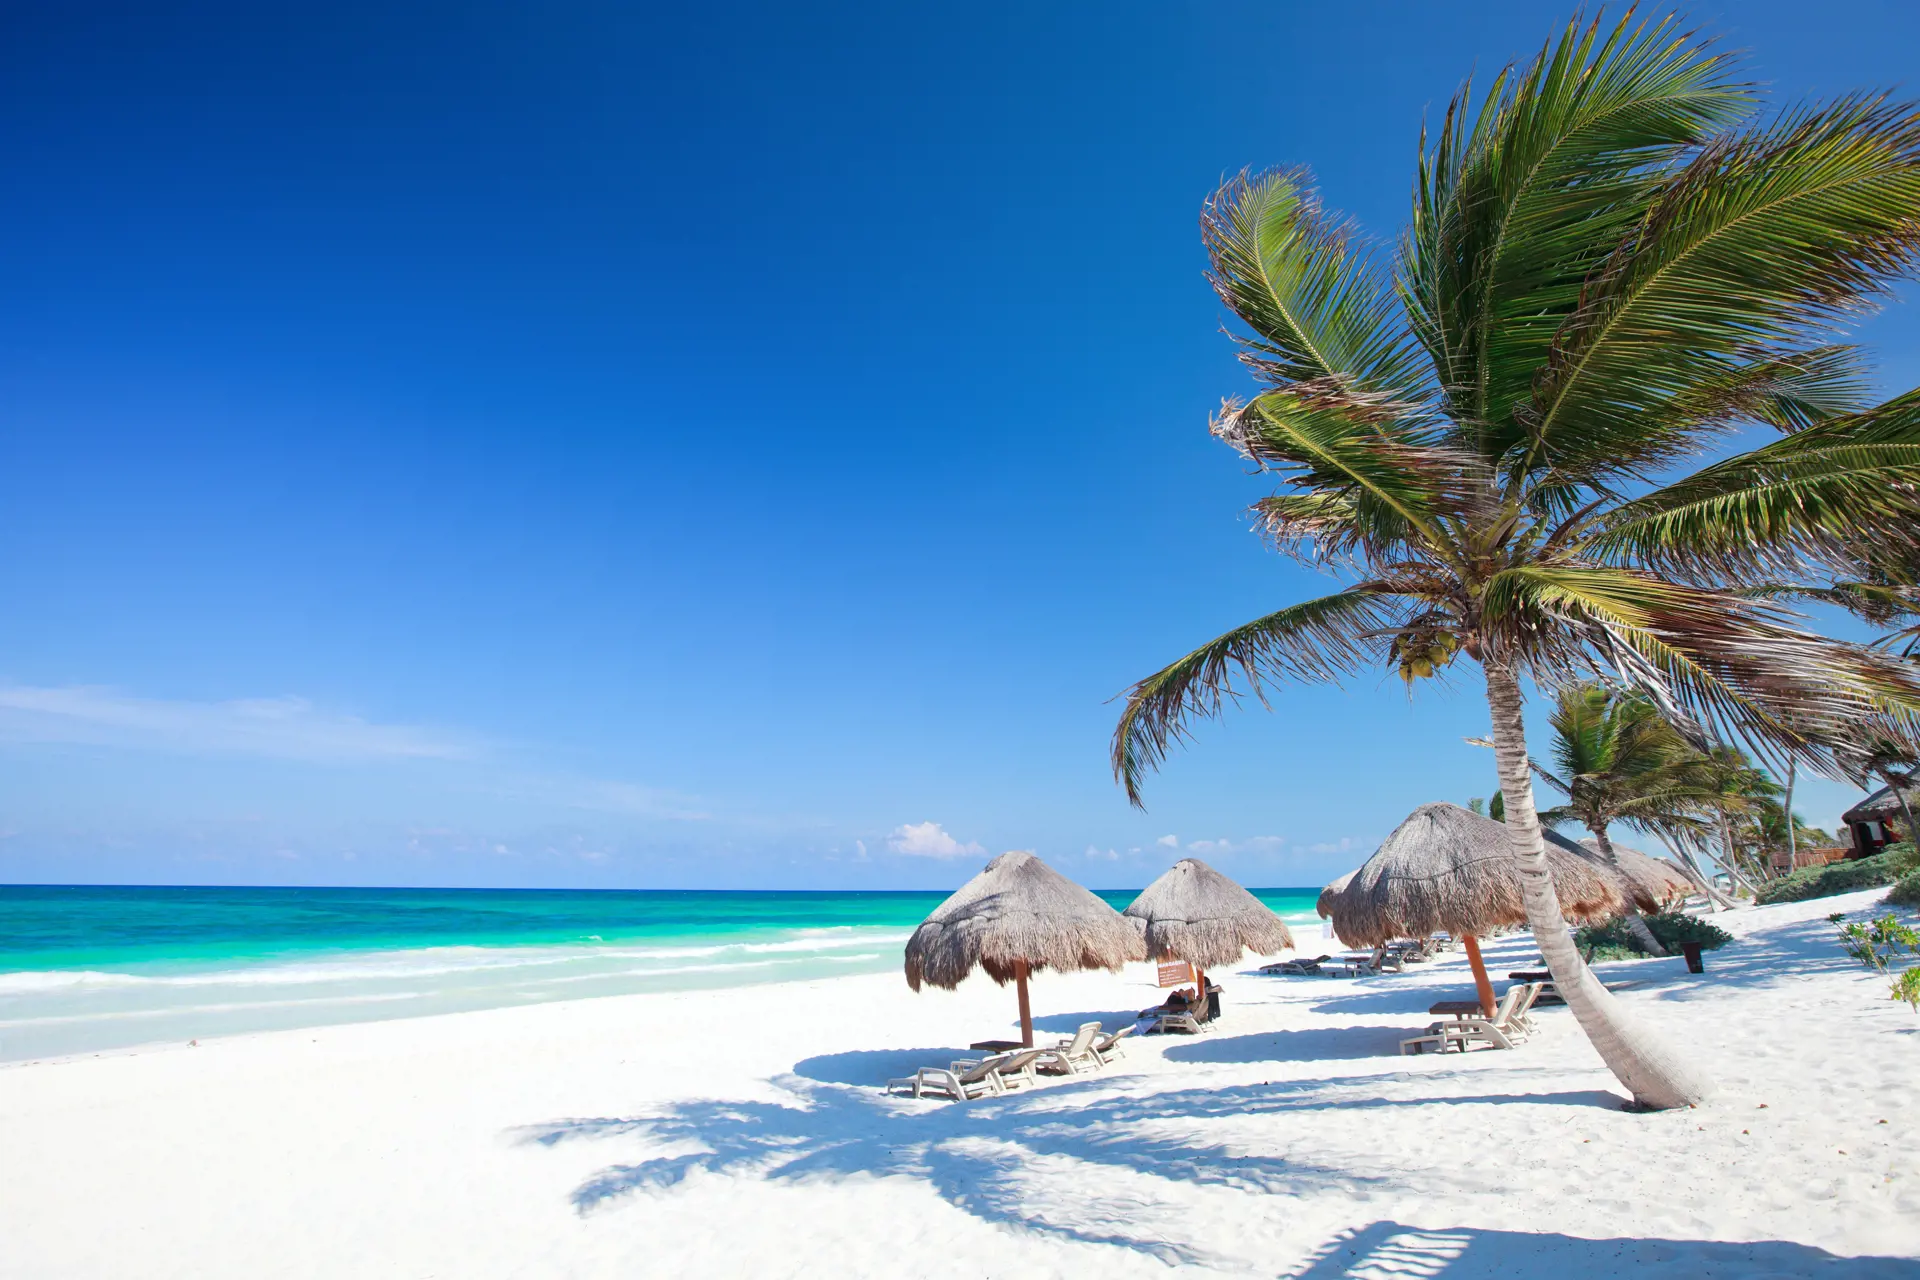 MEXICOS BEDSTE STRAND - Stranden i Tulum hører til blandt de bedste i Mexico. Her tilbringer I nogle afslappende dage efter rundrejsen